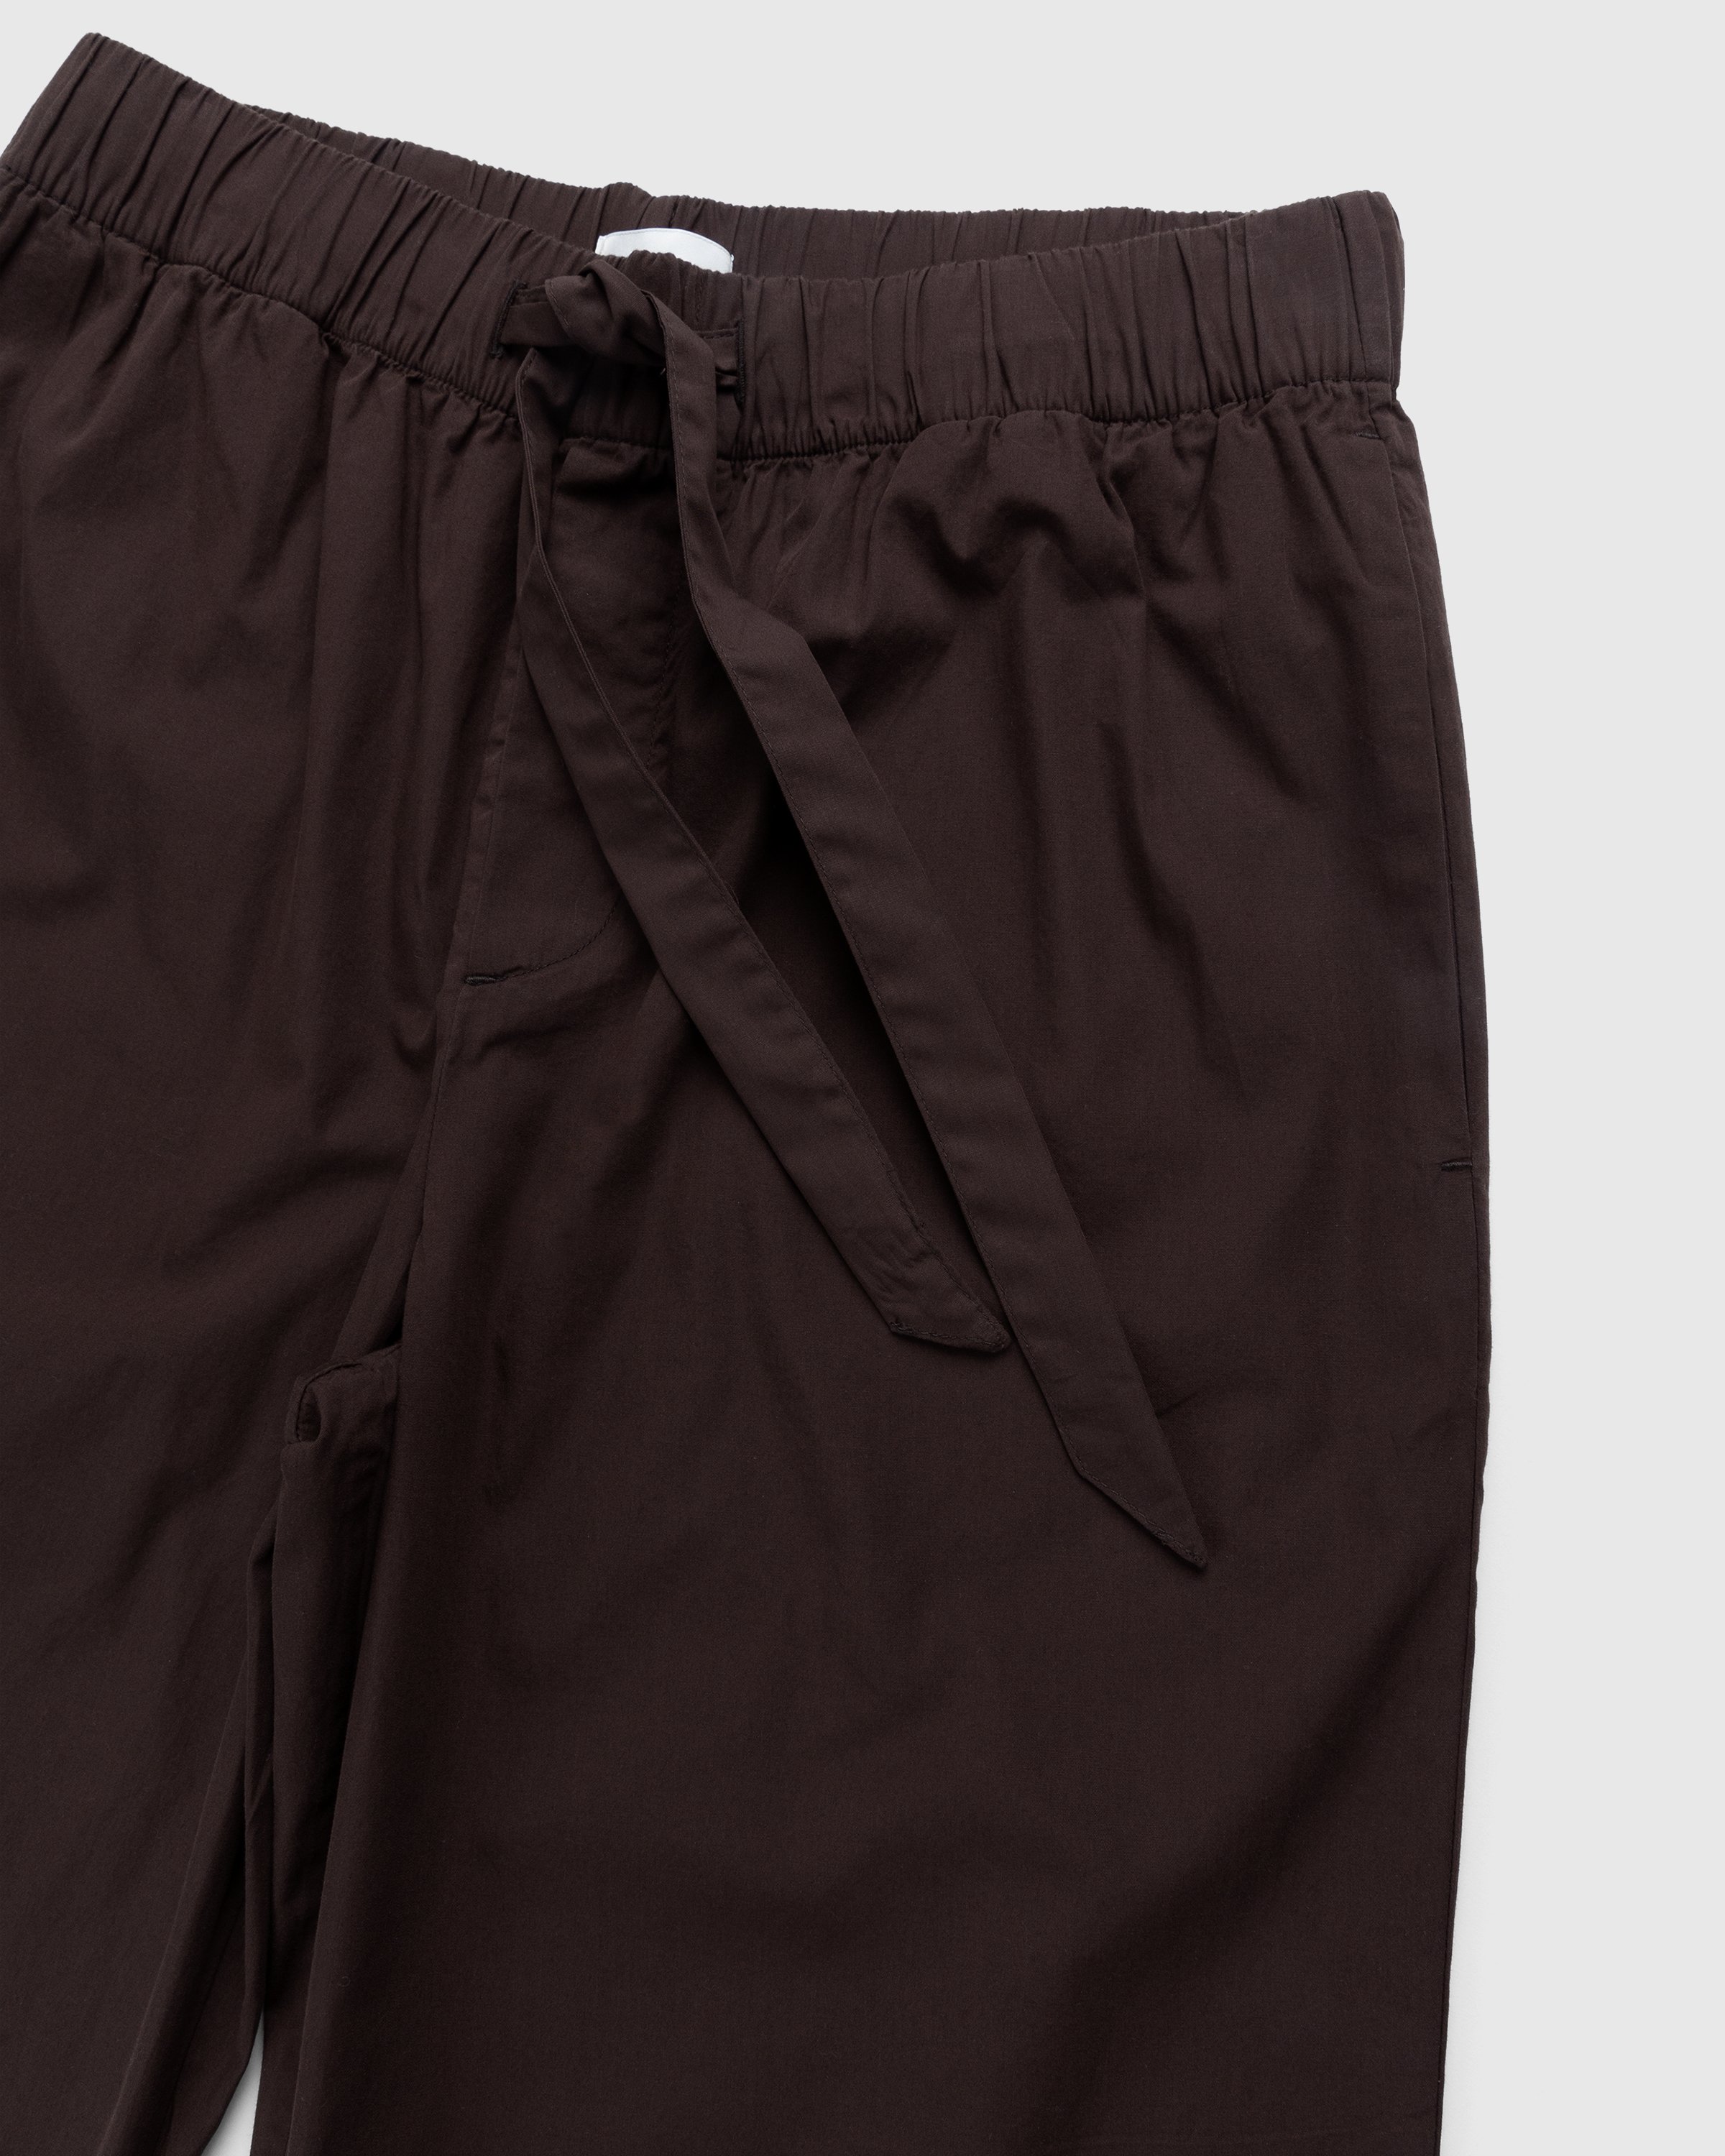 Tekla - Cotton Poplin Pyjamas Pants Coffee - Clothing - Brown - Image 3